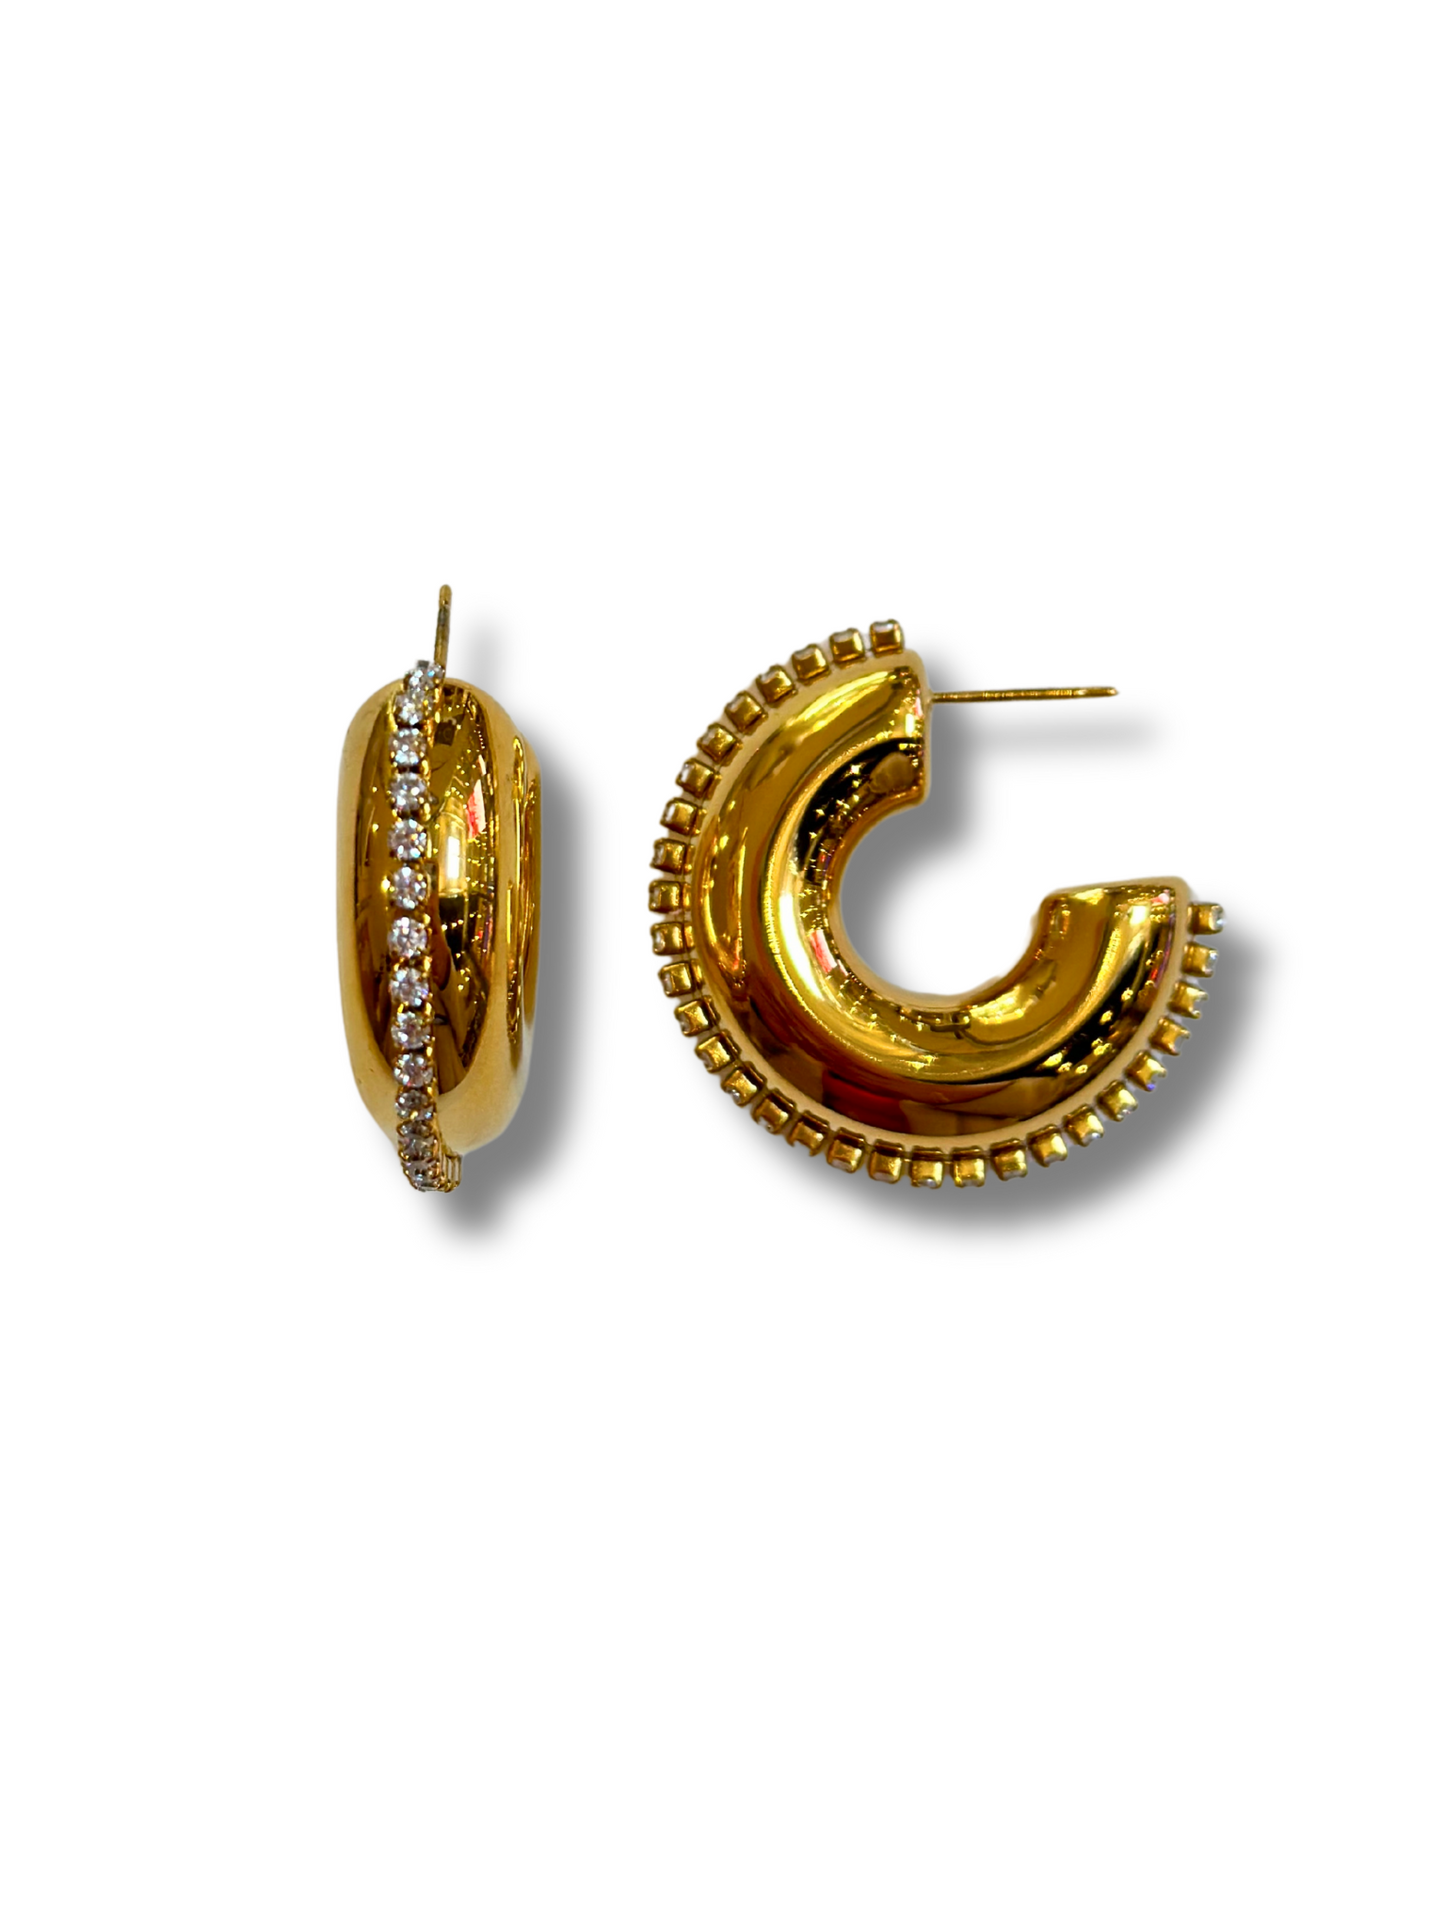 H/Zirconias Earrings